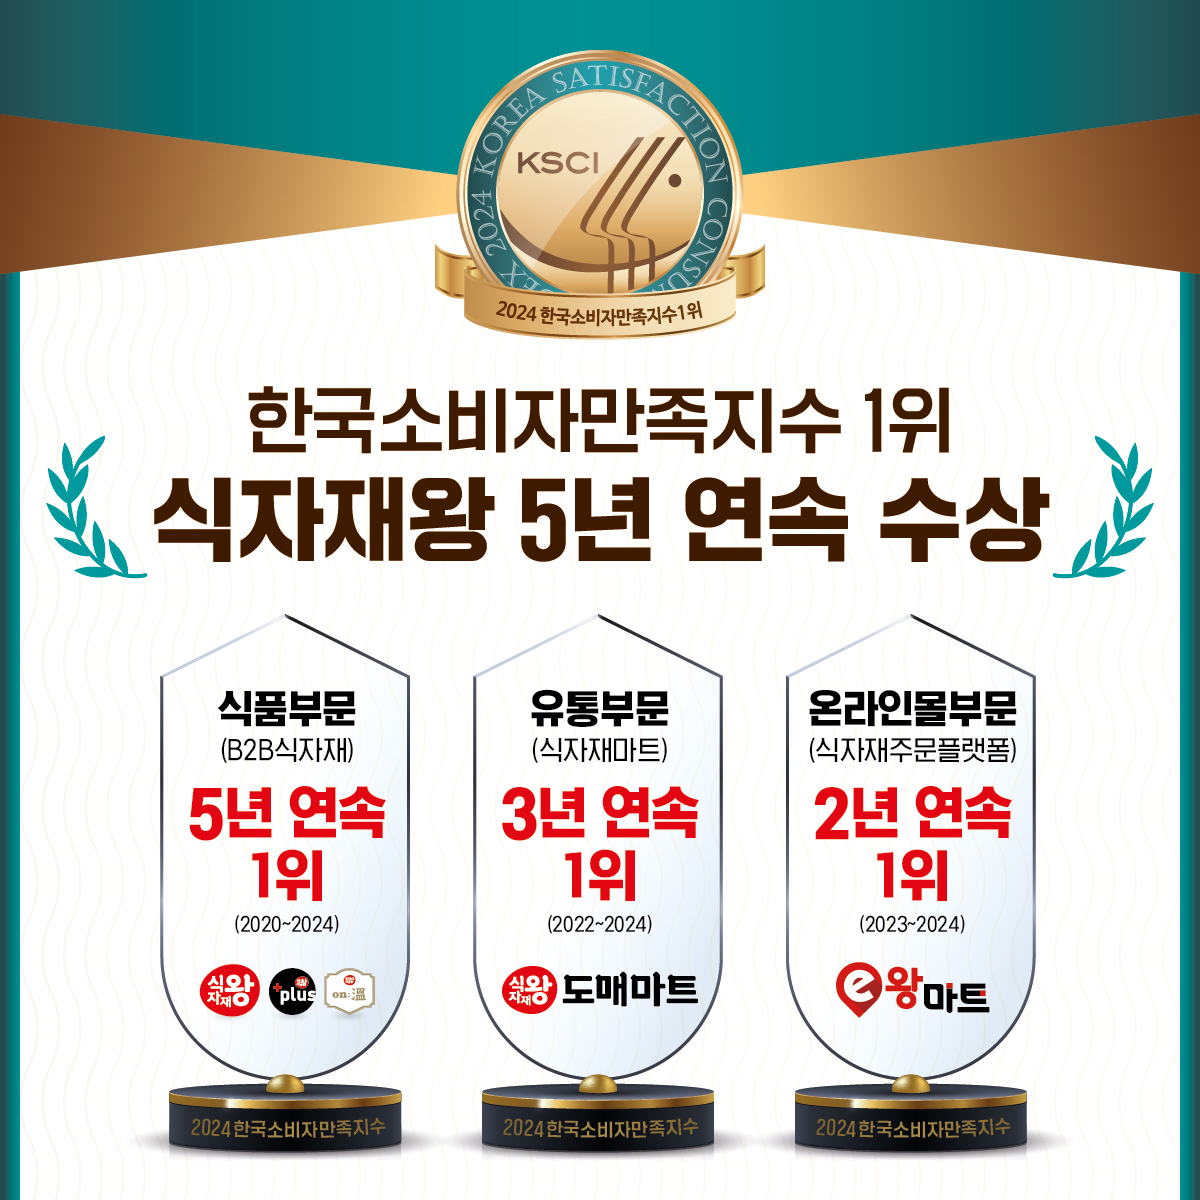 푸디스트 식자재왕, 한국소비자만족지수 1위 5년 연속 수상